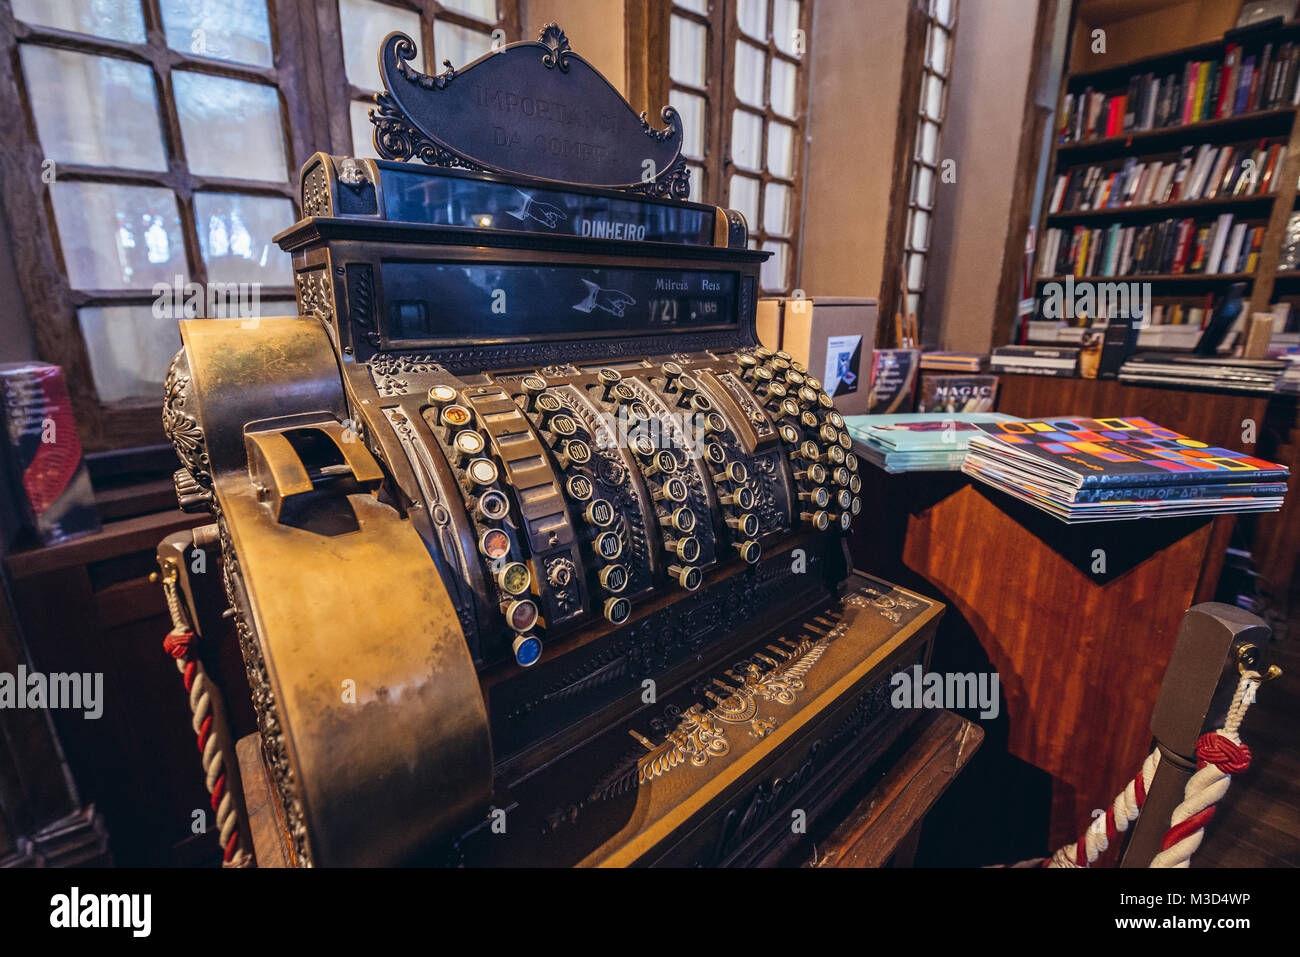 Ancienne cashobox dans l'une des plus célèbres librairies dans le monde entier, la Livraria Lello dans la ville de Porto au Portugal Banque D'Images